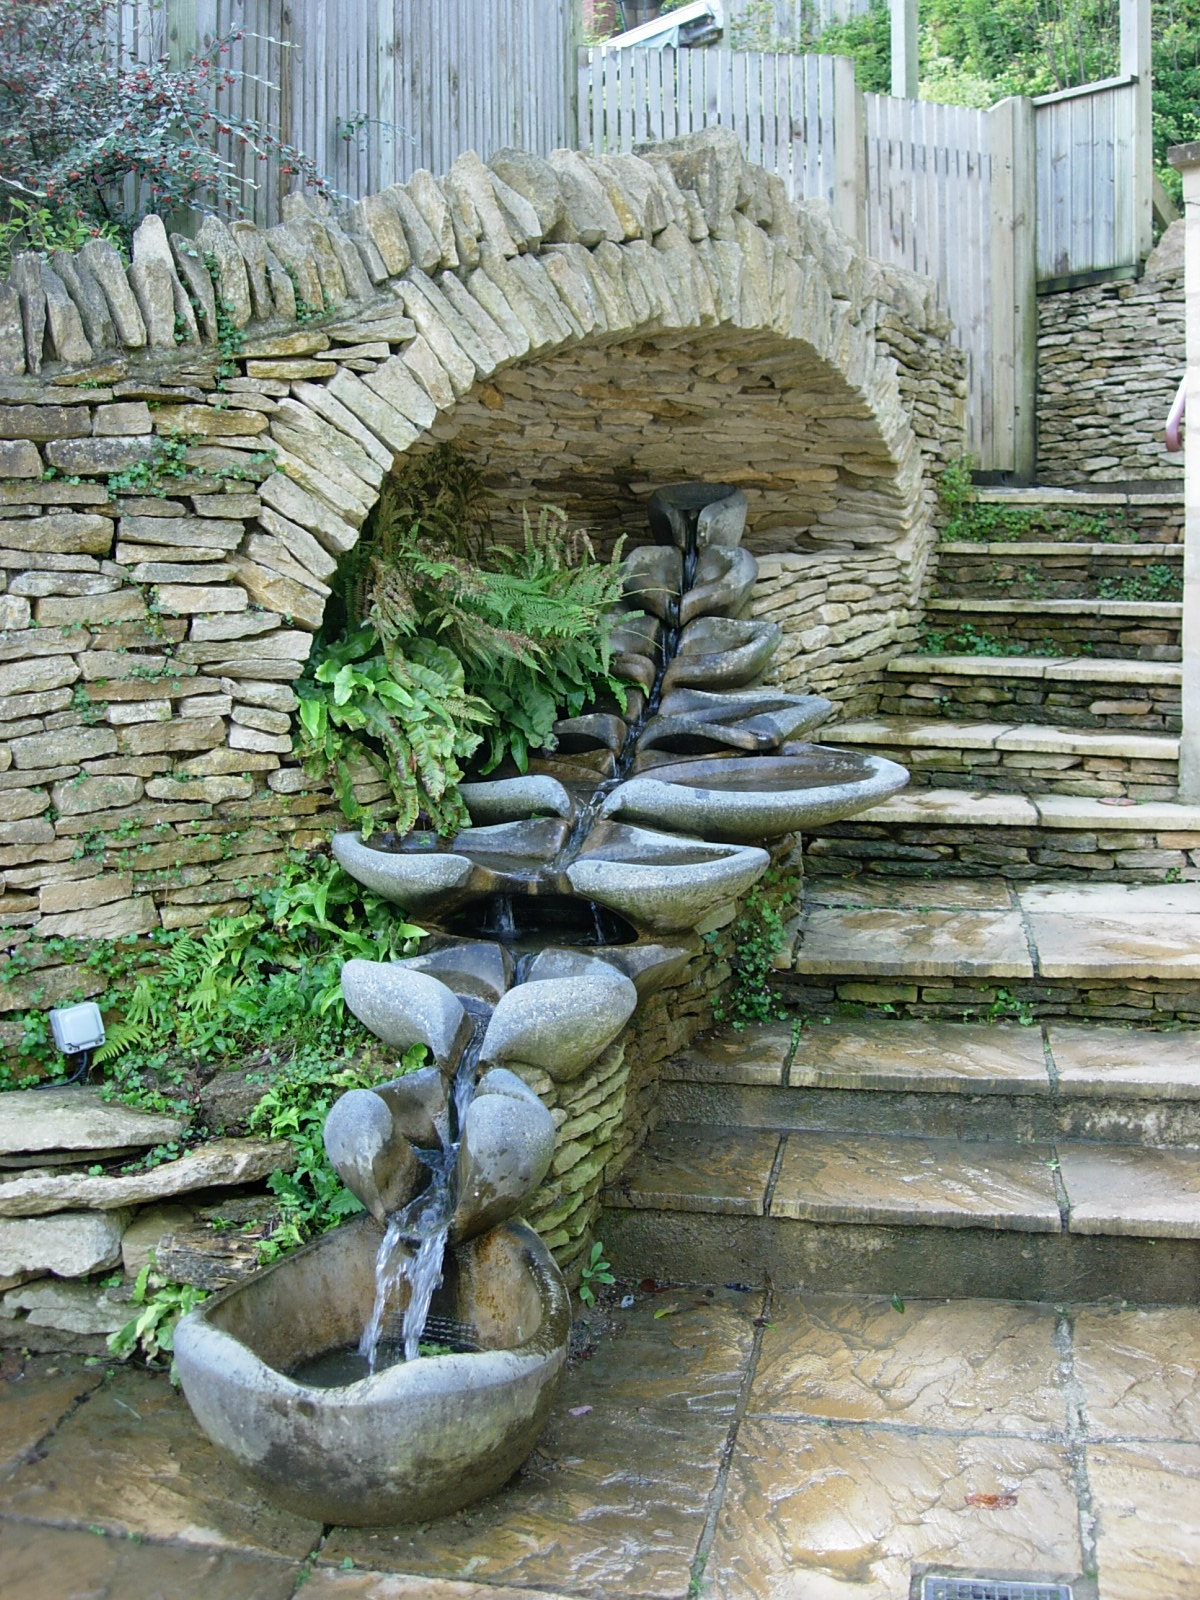 La fontaine Symphonie, avec toutes les Vasques Vives, installée sous une arche de pierres accompagnant la descente d'un escalier.